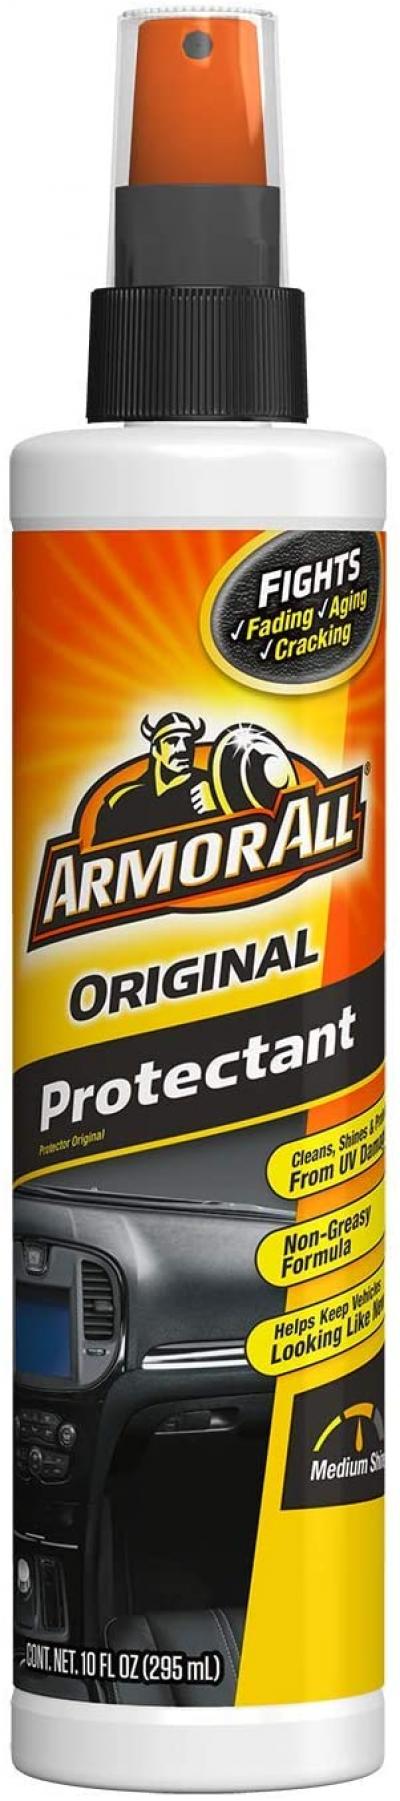 Armor All Original Protectant 10oz.